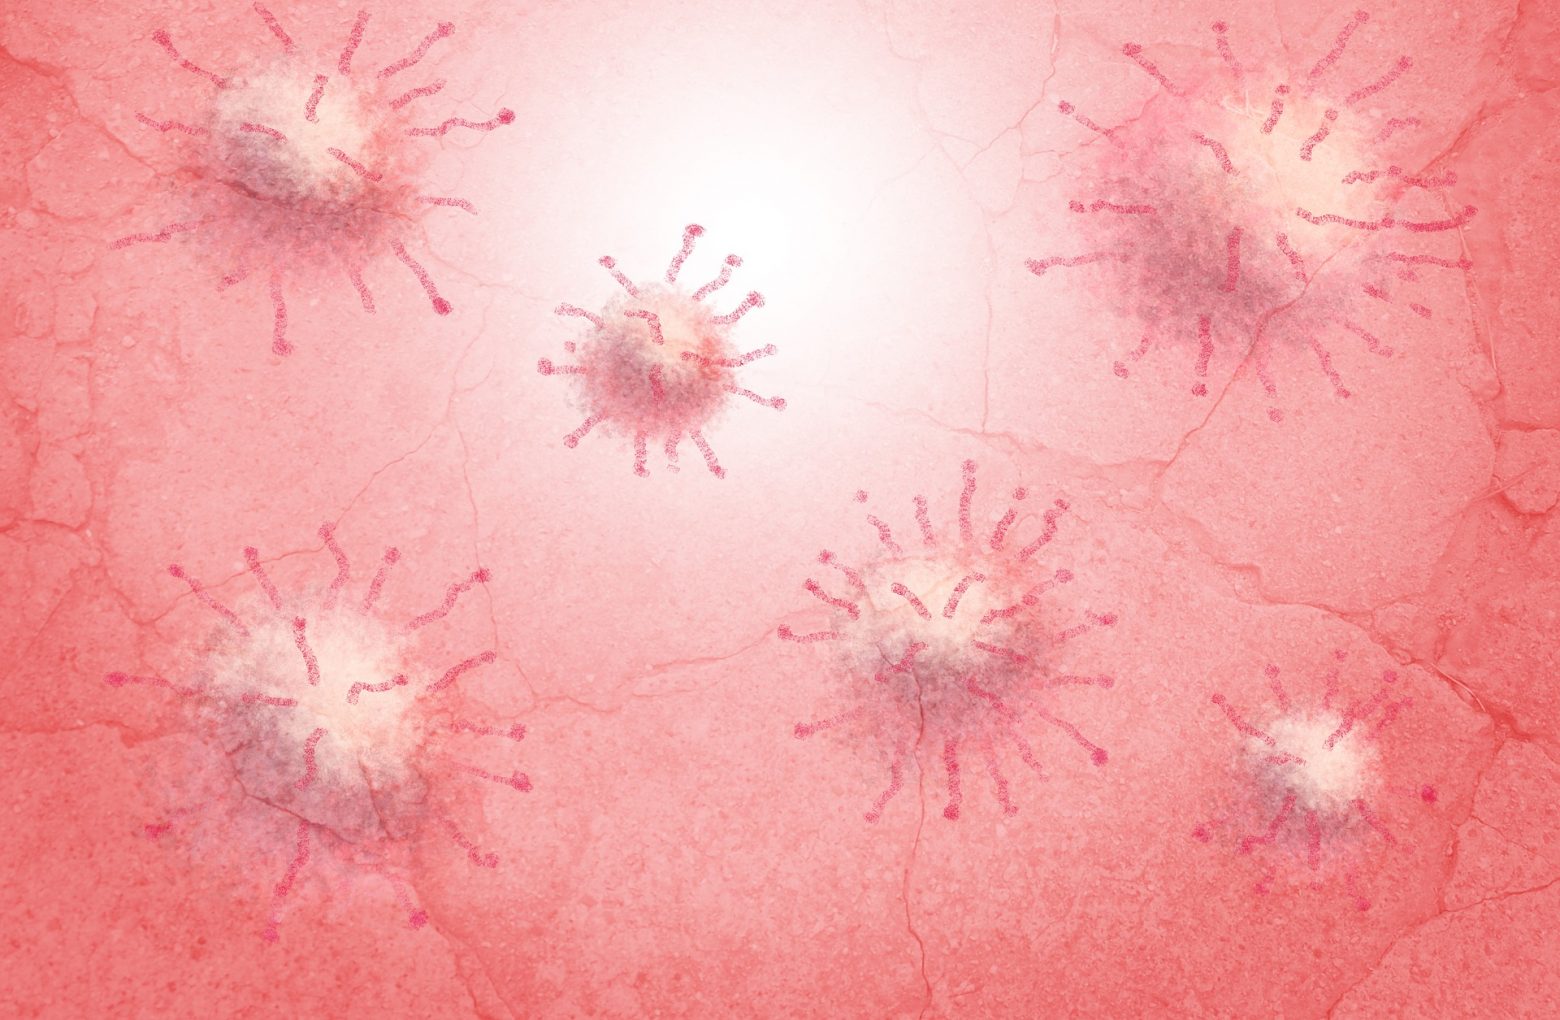 El virus del papiloma humano (VPH); causas, síntomas y tratamiento